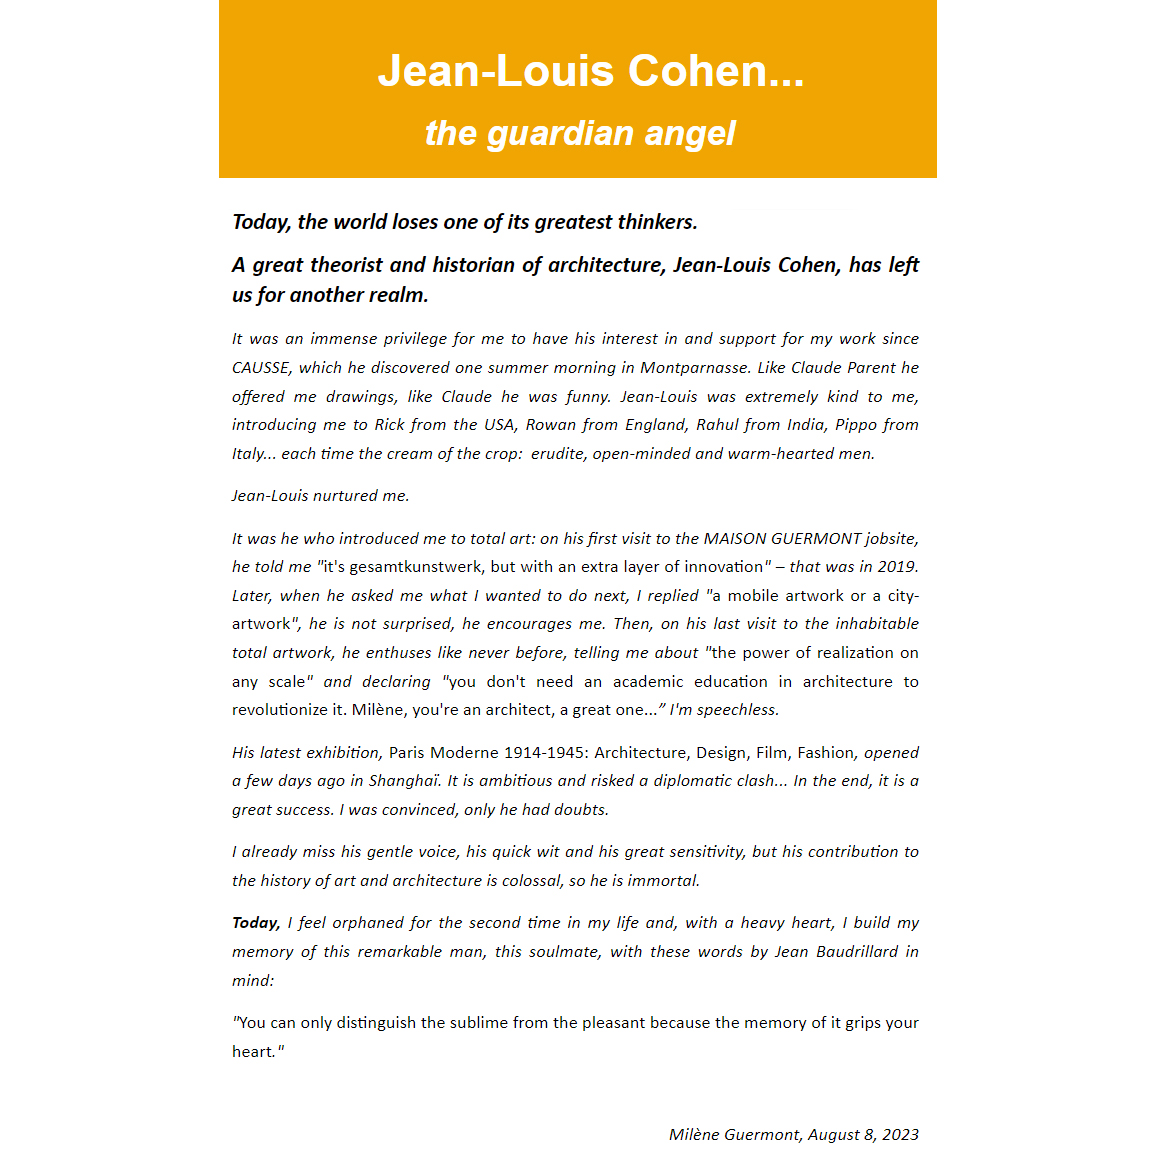 Lettre-homage to Jean-Louis Cohen by Milène Guermont